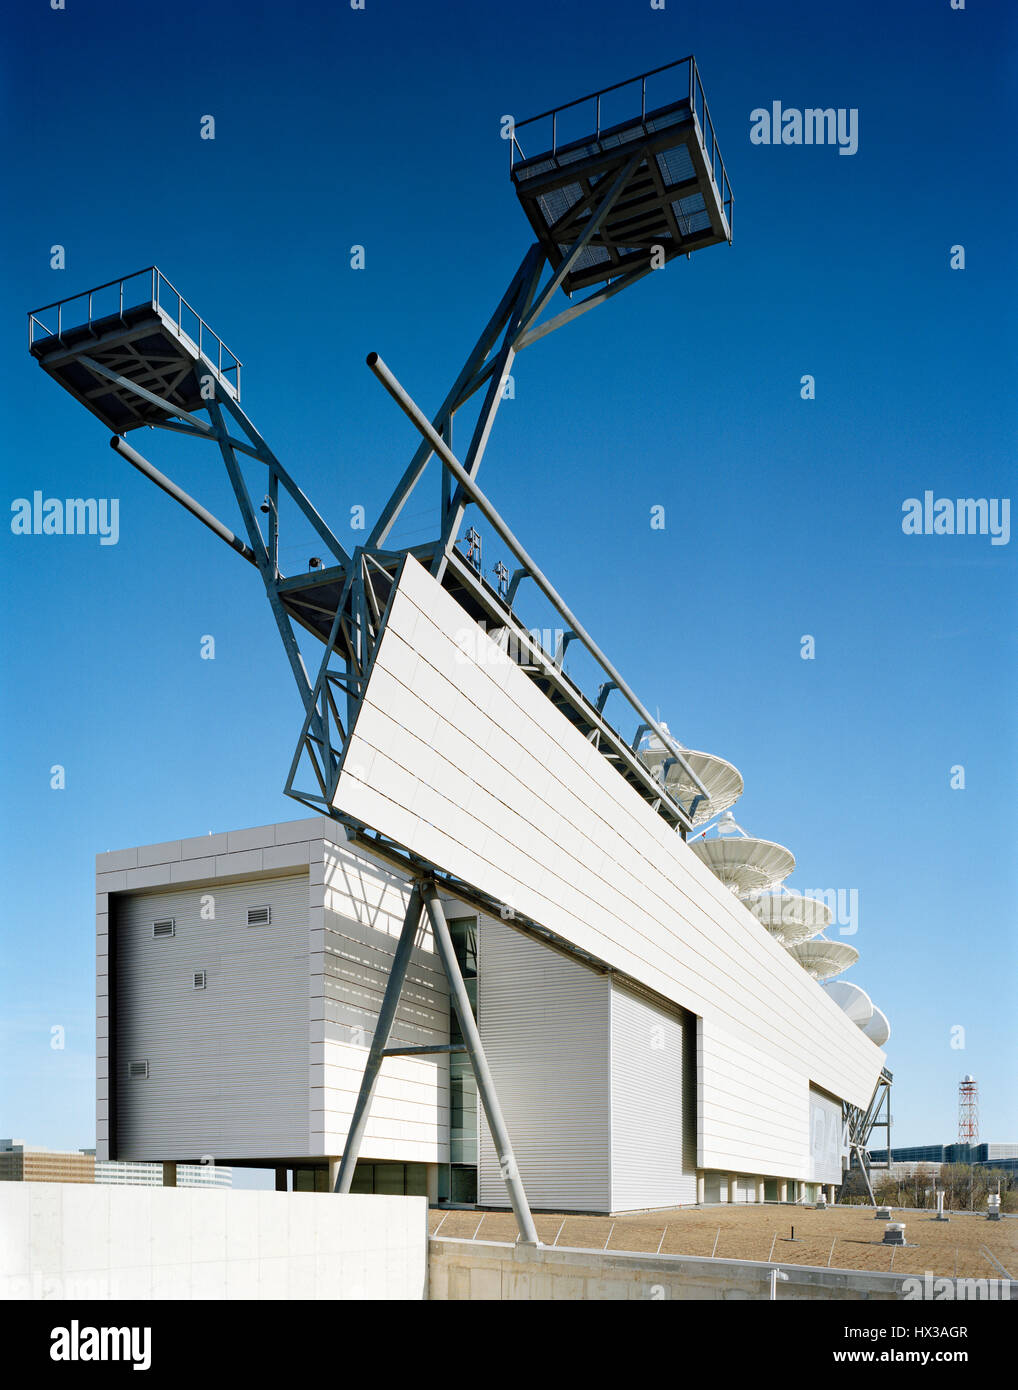 Gesamtansicht von Norden. NOAA-Satelliten Operations Facility, Suitland, Vereinigte Staaten von Amerika. Architekt: Morphosis, 2006. Stockfoto